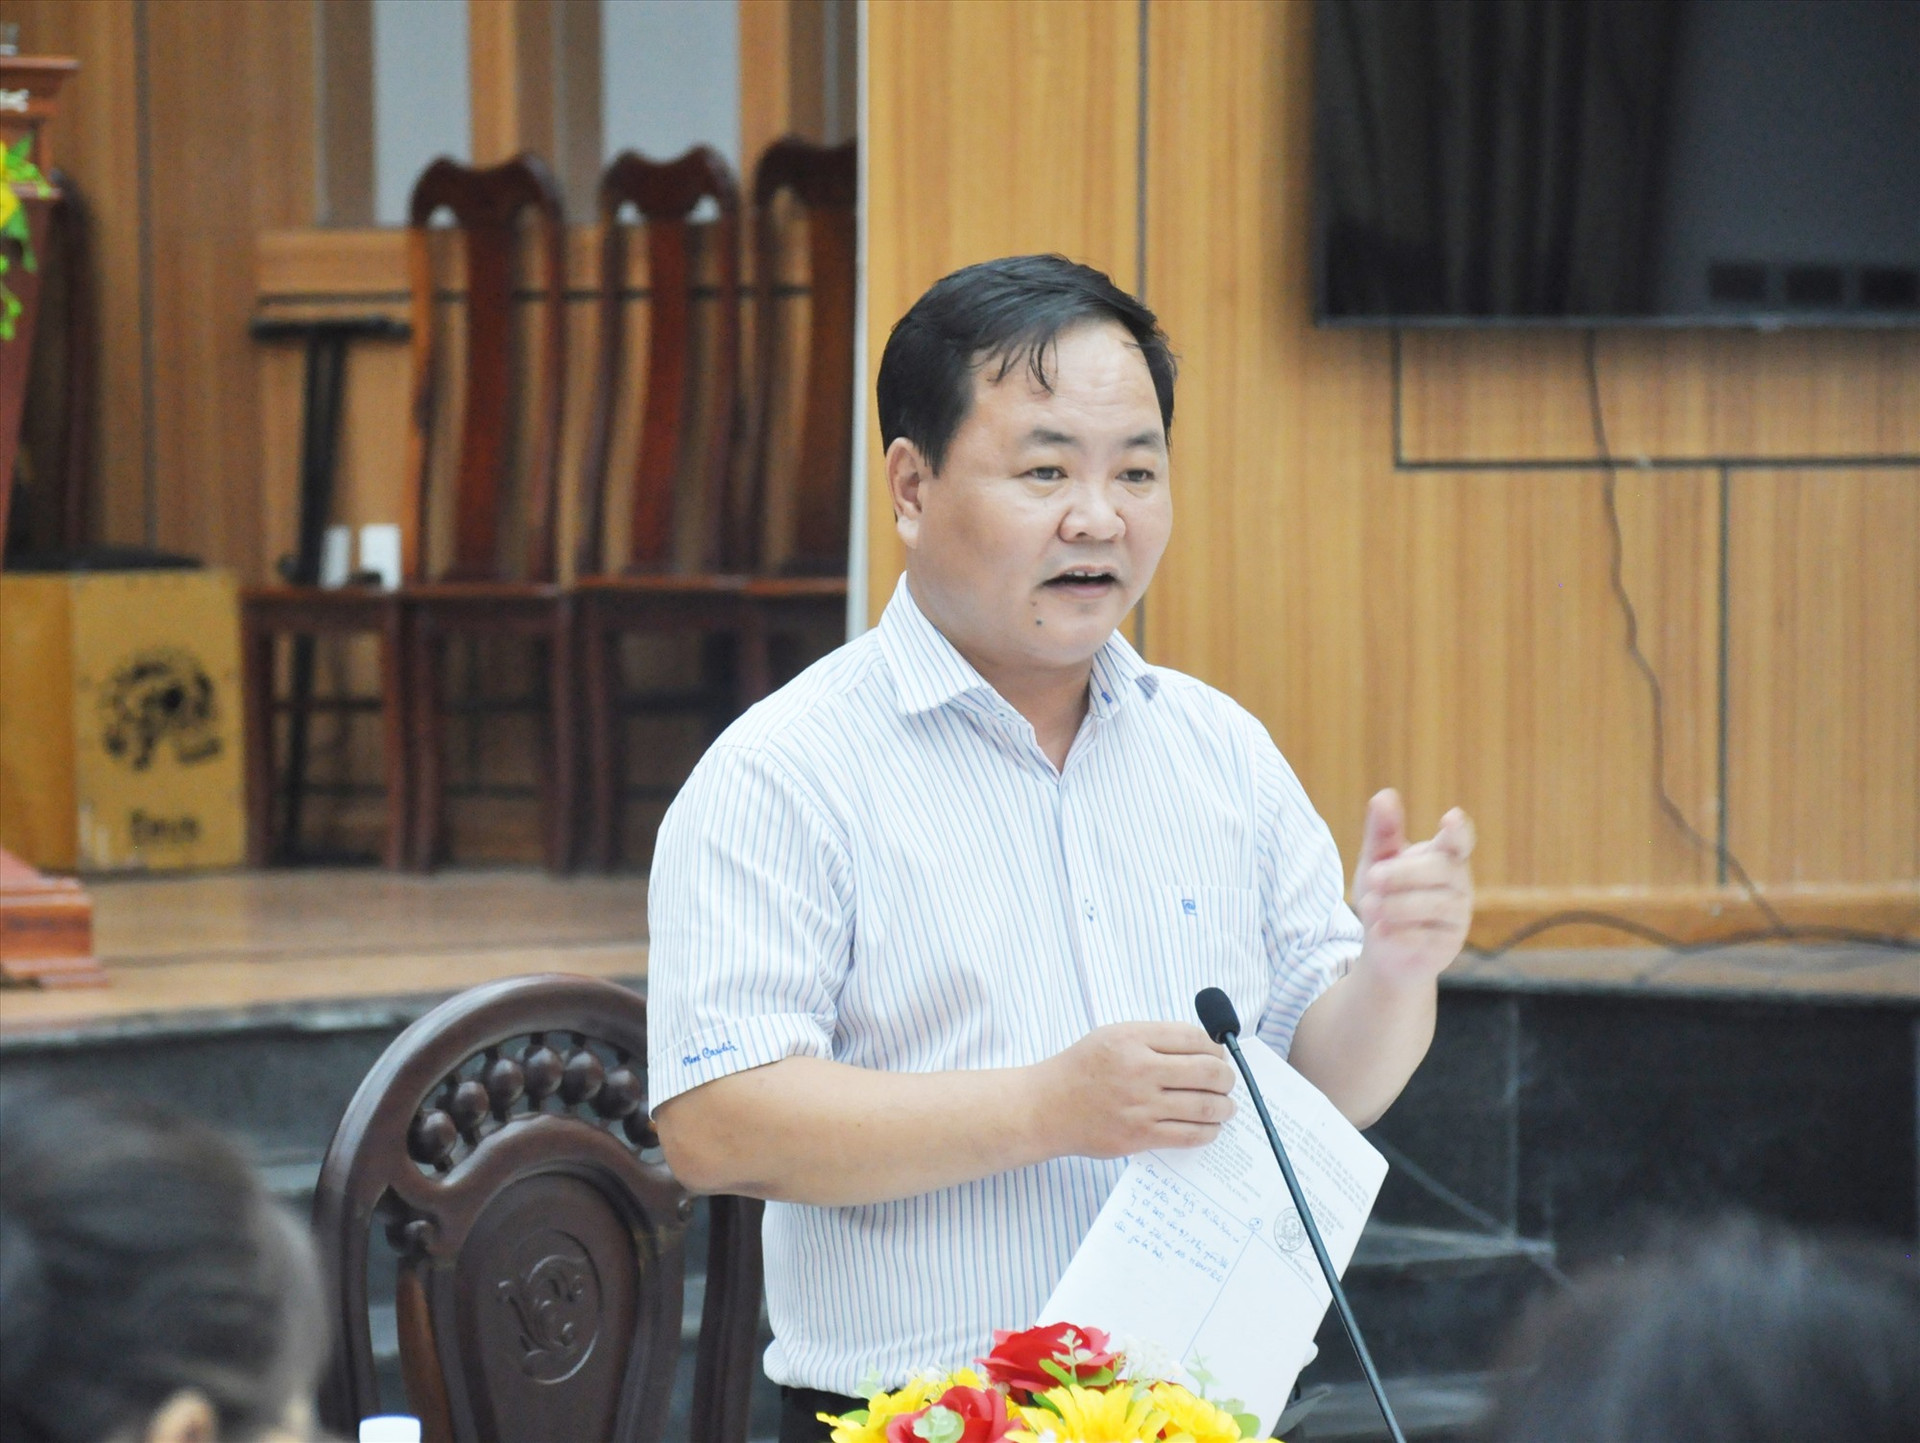 Phó Chủ tịch UBND tỉnh Nguyễn Hồng Quang lưu ý Nông Sơn cần tập trung làm tốt việc giải ngân vốn đầu tư công trong thời gian tới. Ảnh: N.Đ